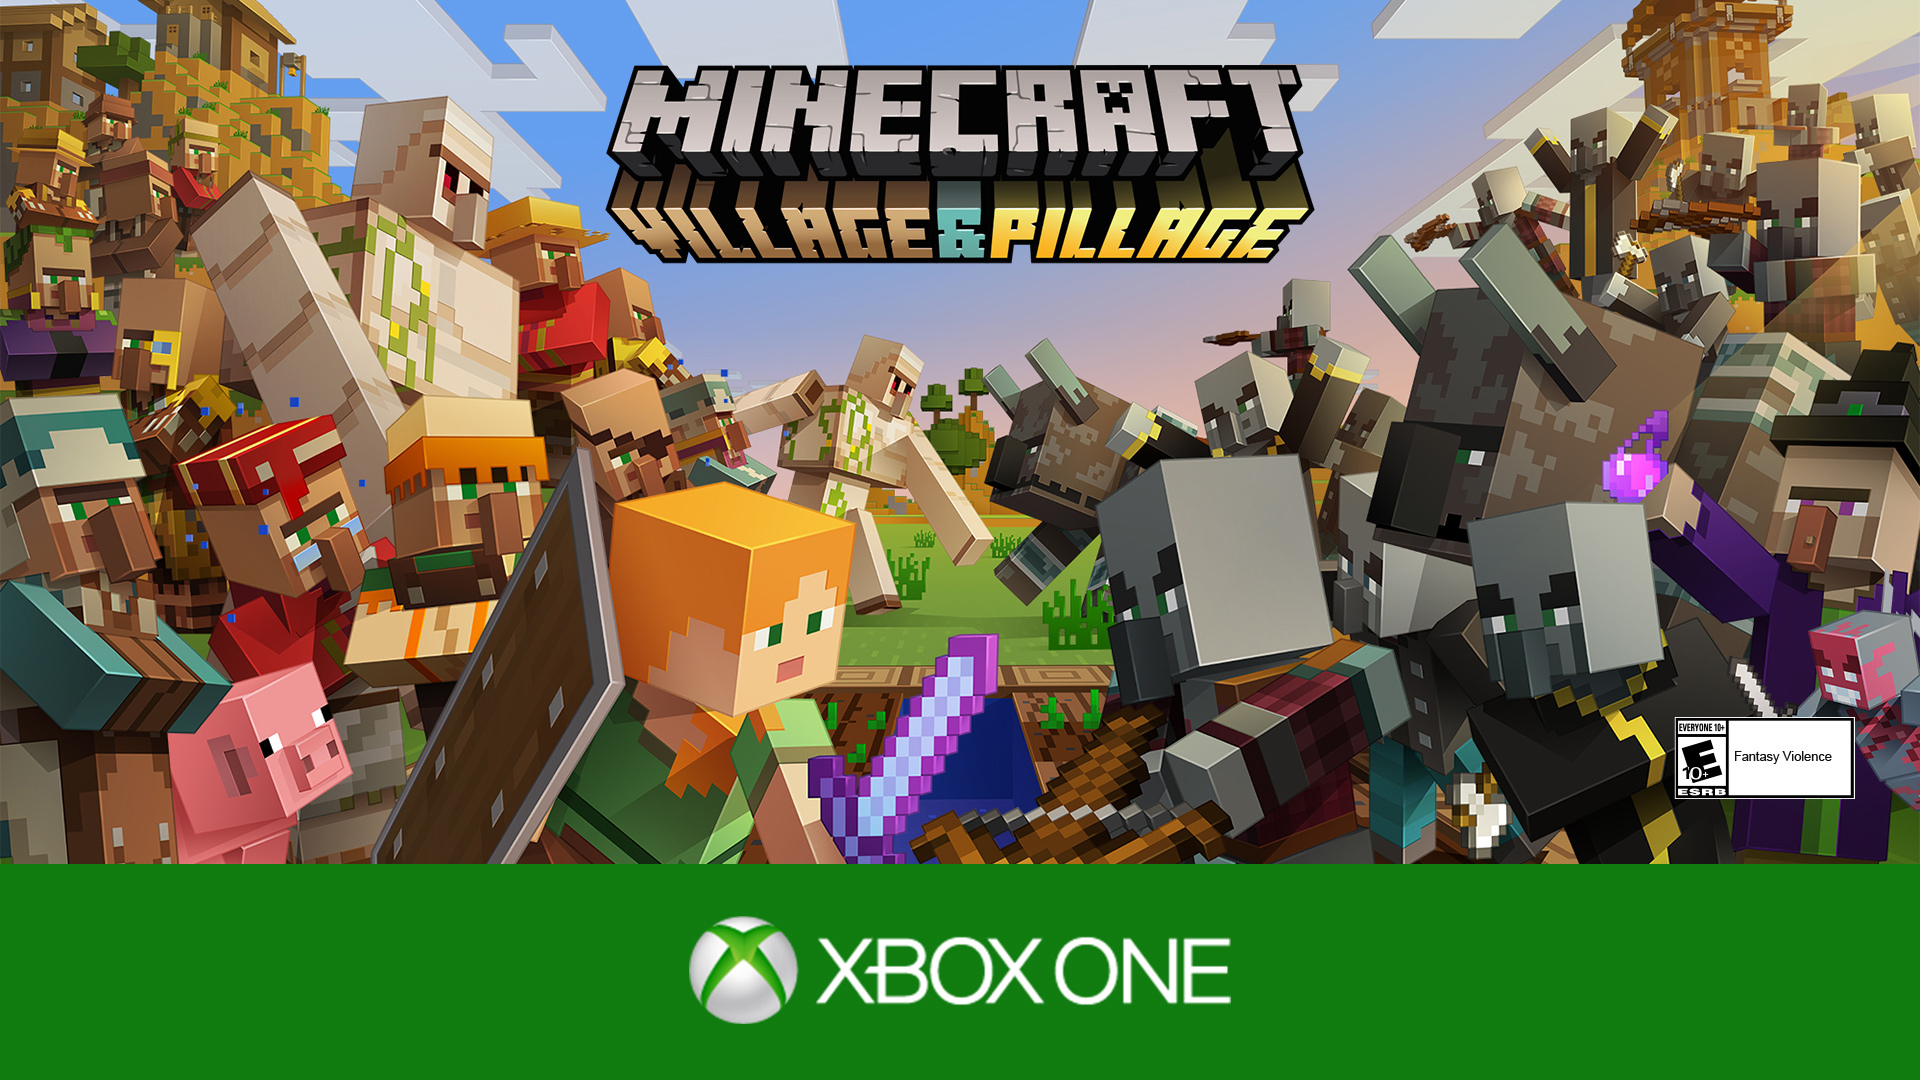 Майн 14. Майнкрафт 1.14 Village and Pillage. Minecraft PLAYSTATION 4 Edition. Меню игра Pillage the Village. Village and Pillage Mod.